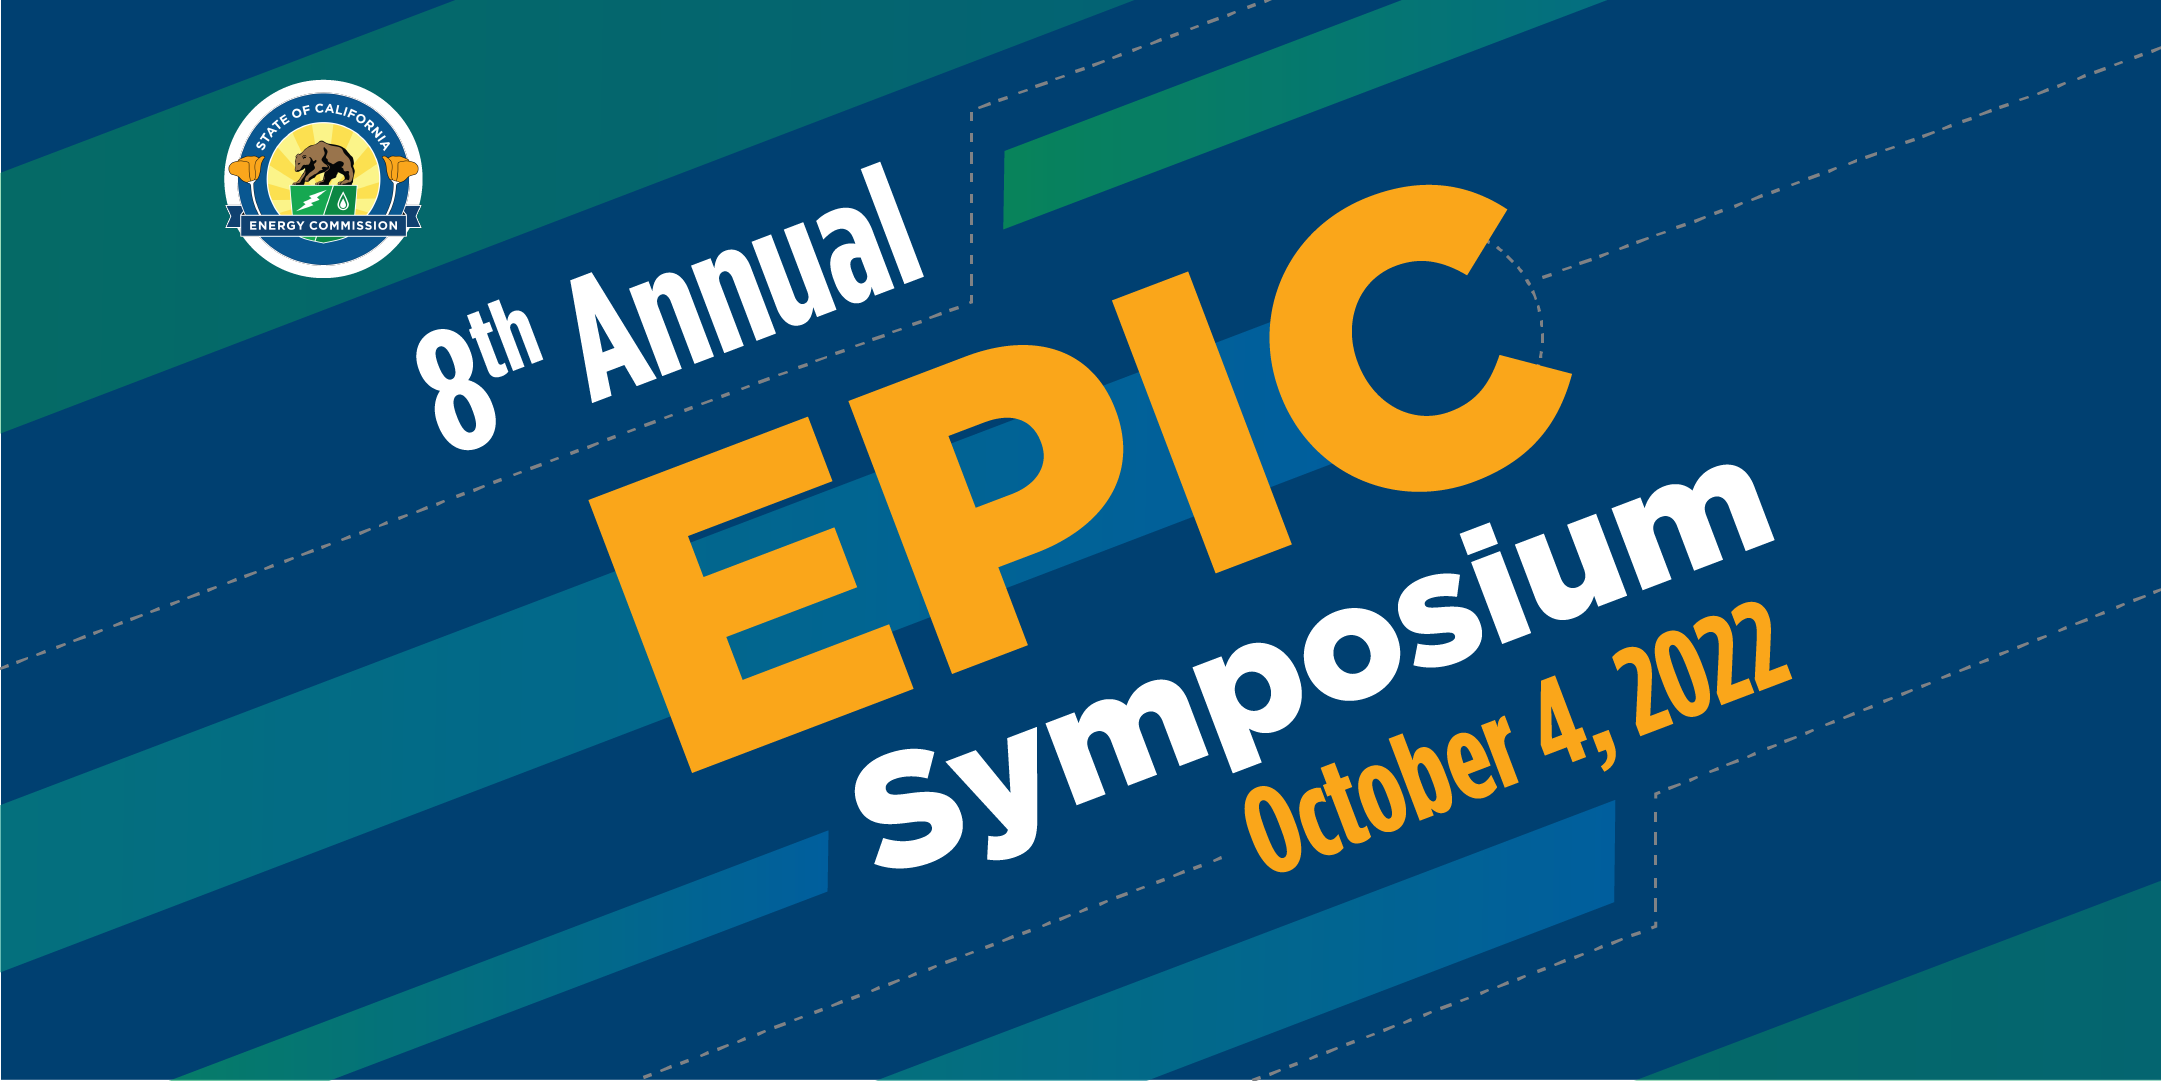 8th Annual EPIC Symposium, October 4, 2022, graphic